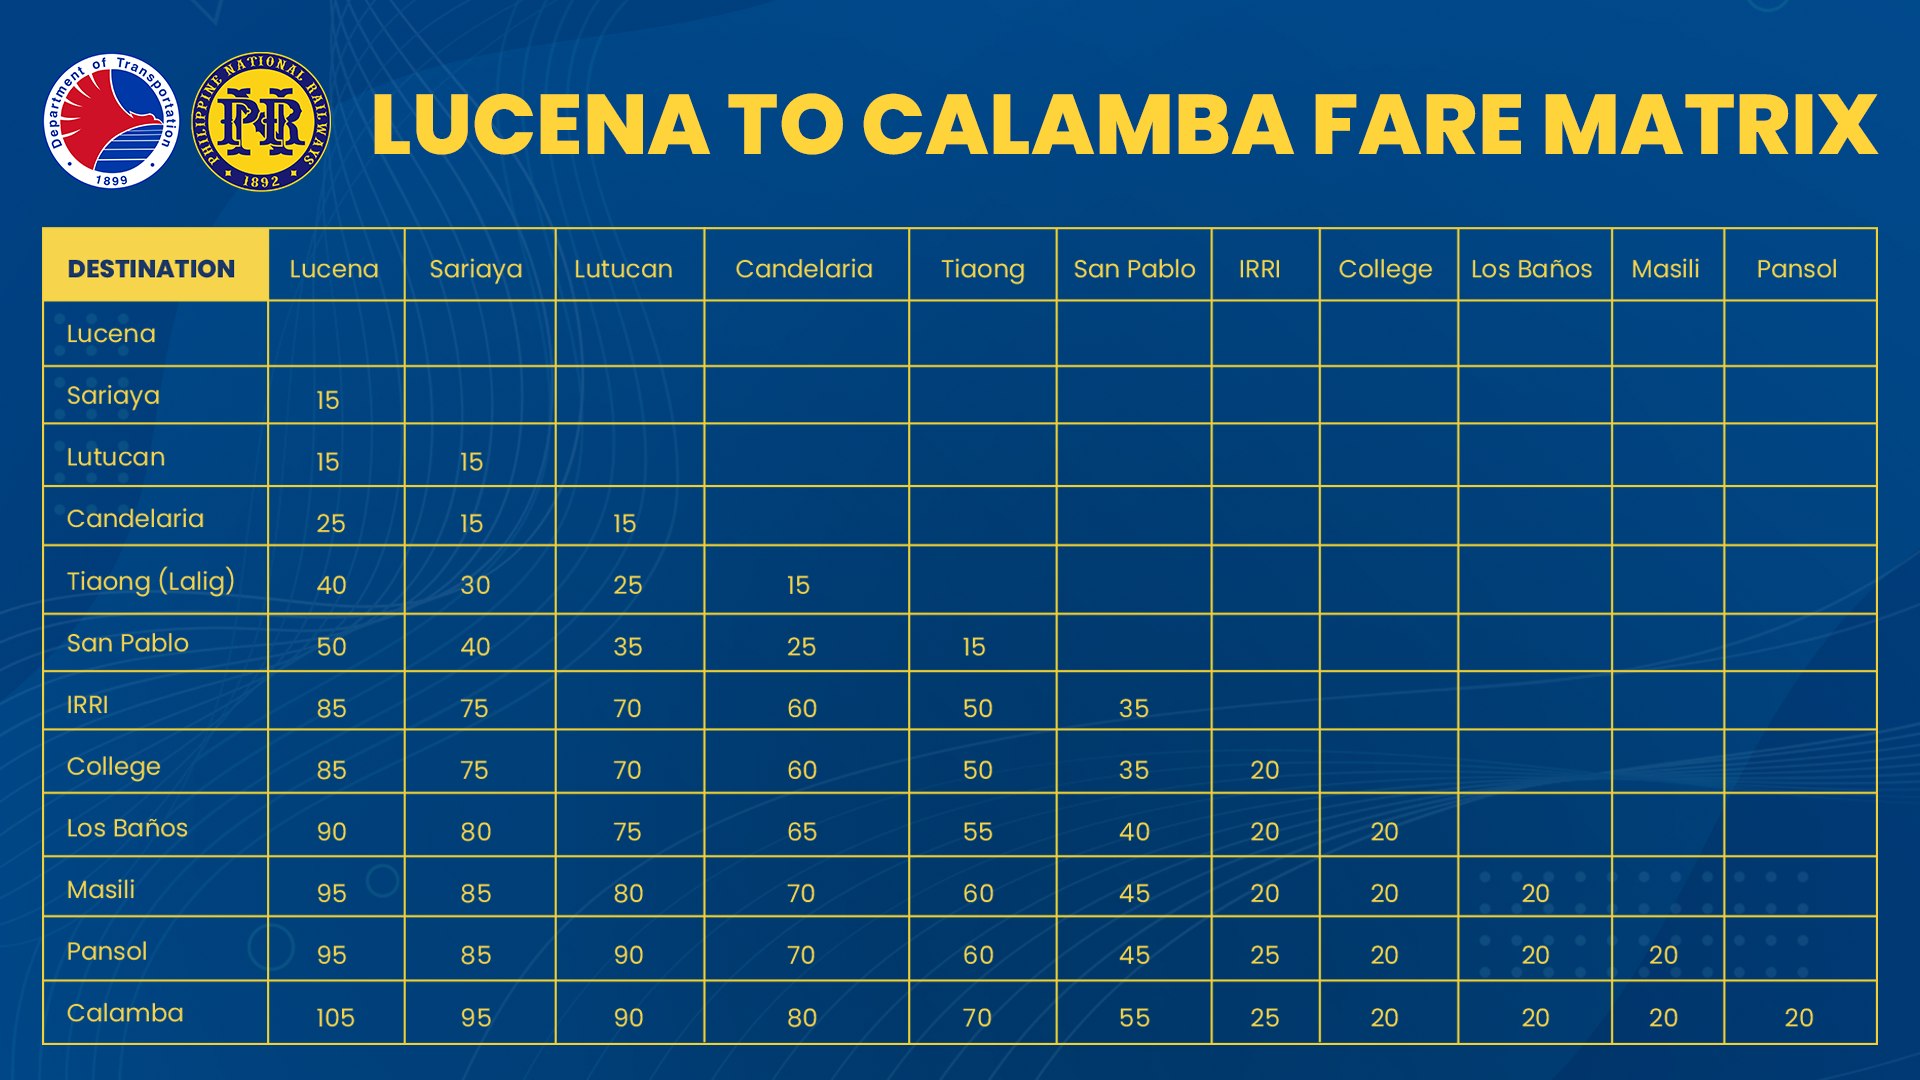 Calamba-Lucena PNR fare matrix